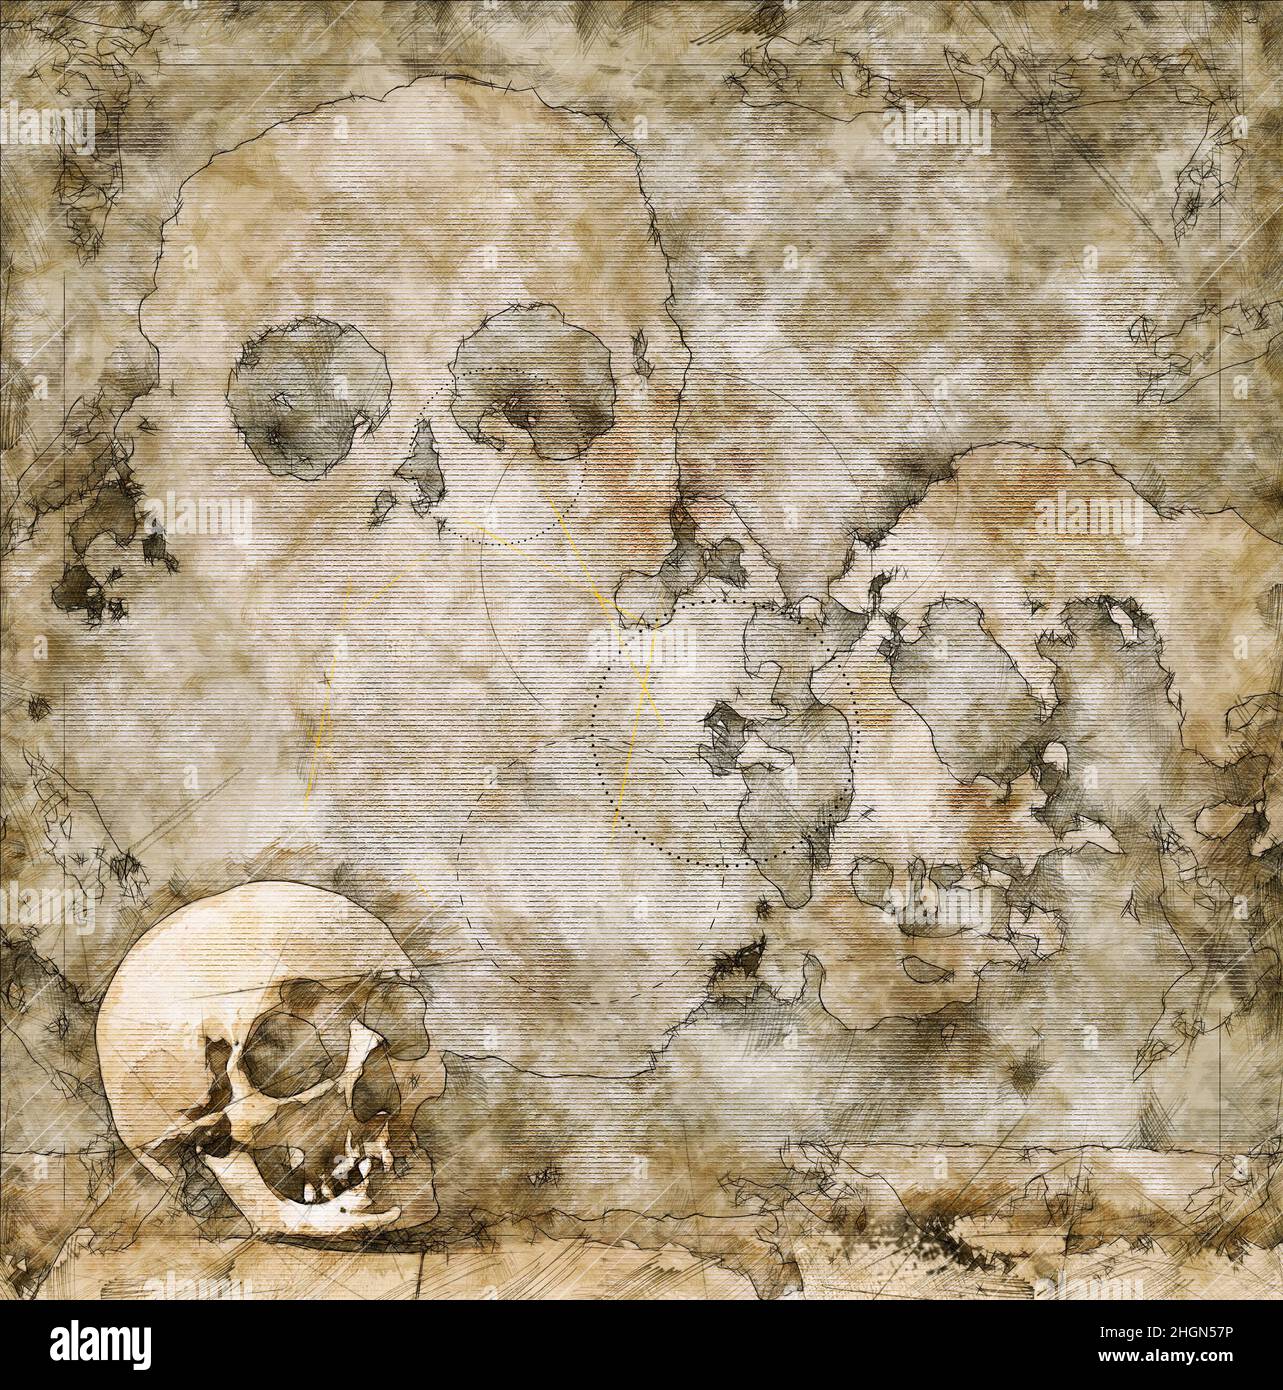 Illustrazione schizzo di un cranio umano vecchio, incrinato e danneggiato contro la mappa del tesoro Foto Stock